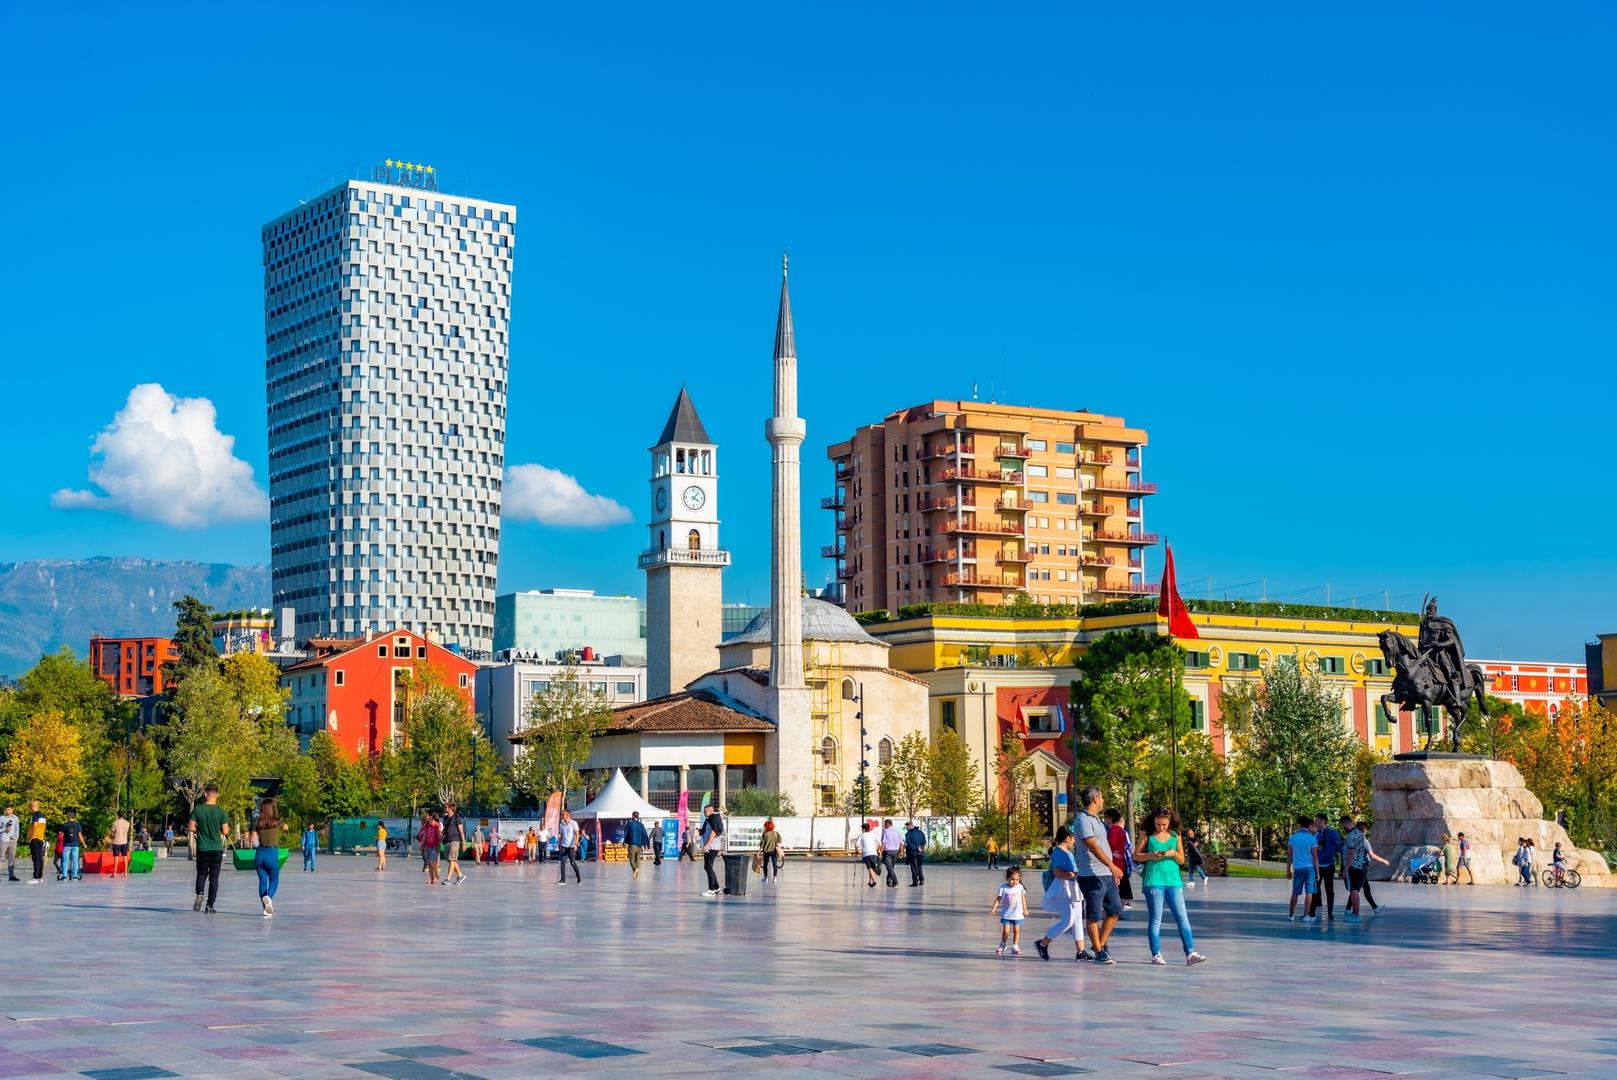 Jedna od čudnih činjenica o Albaniji je da ima samo tri milijuna Albanaca, dok se procjenjuje da izvan zemlje živi sedam do deset milijuna Albanaca. To je uglavnom zato što ovdje može biti teže pronaći dobro plaćen posao, pa je nekima jednostavno lakše preseliti se u drugu zemlju.